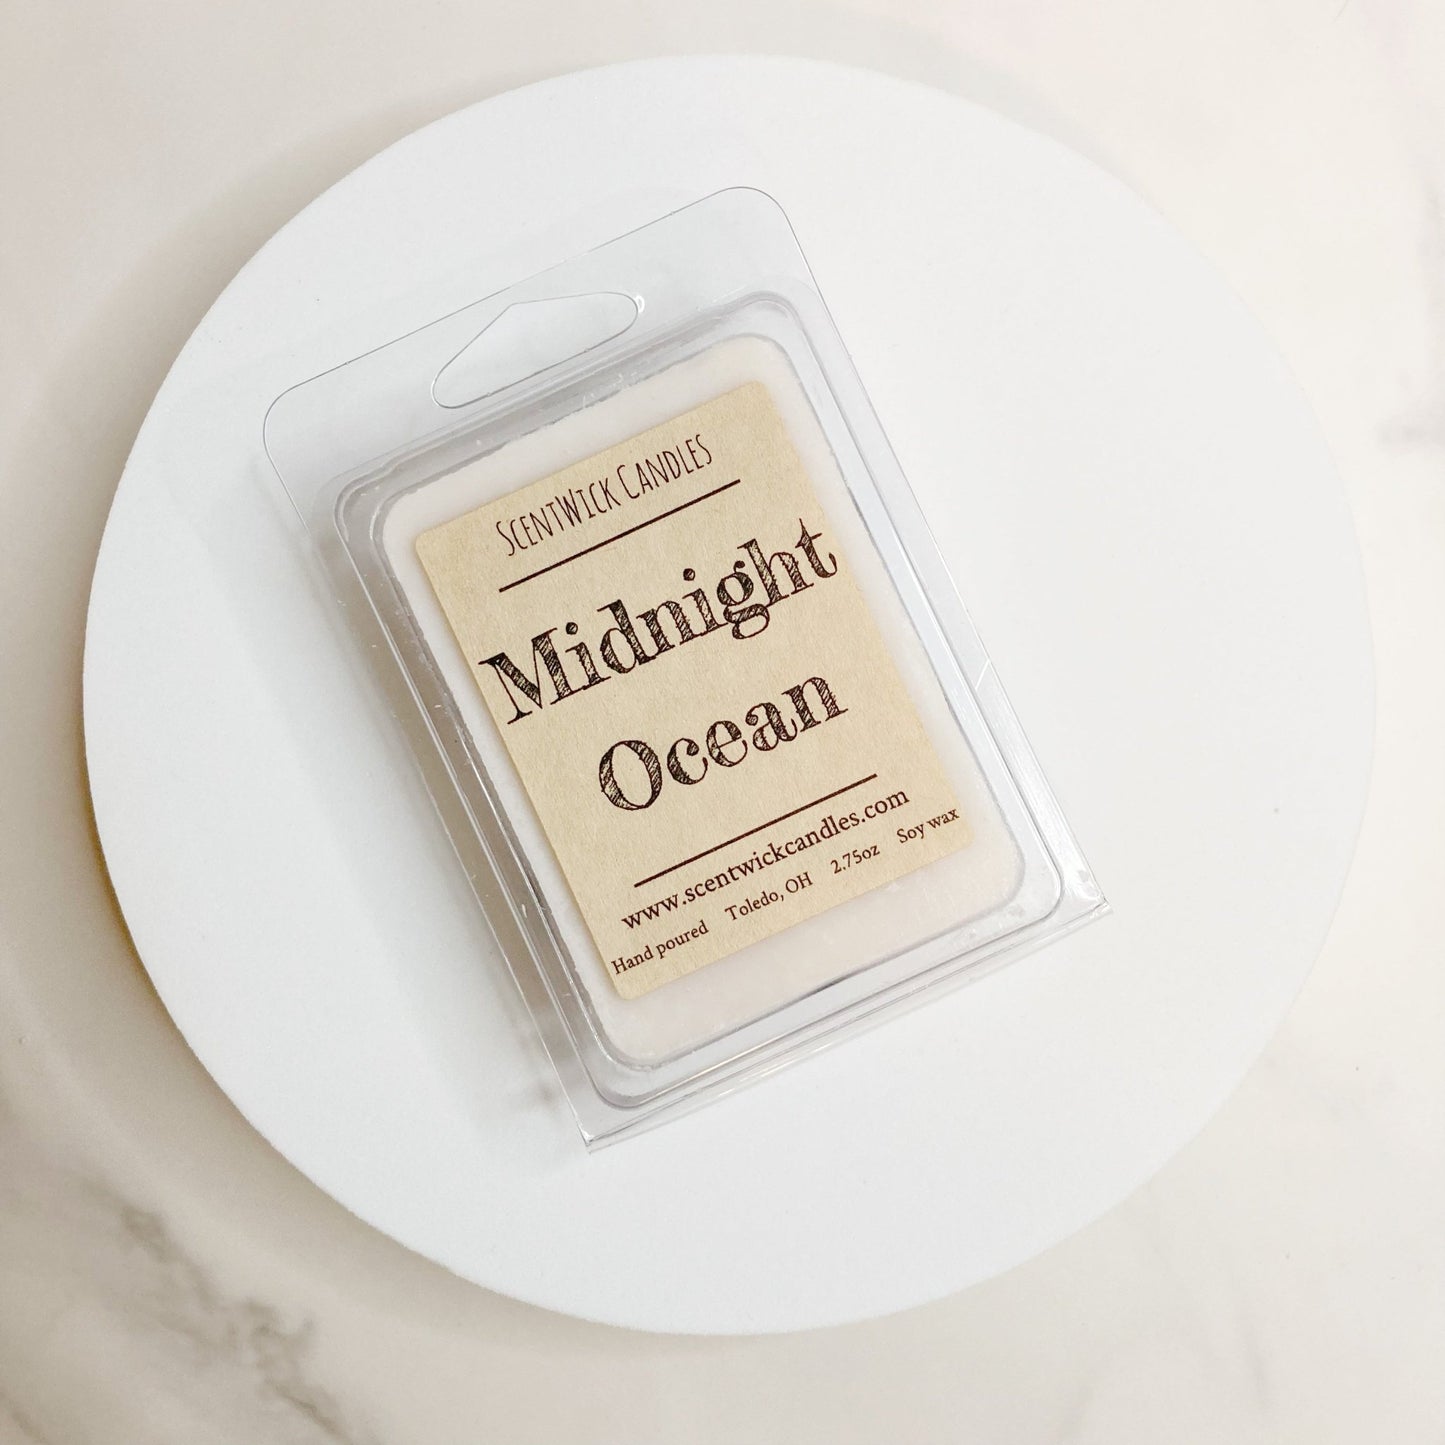 Midnight Ocean Wax Melt - ScentWick Candles